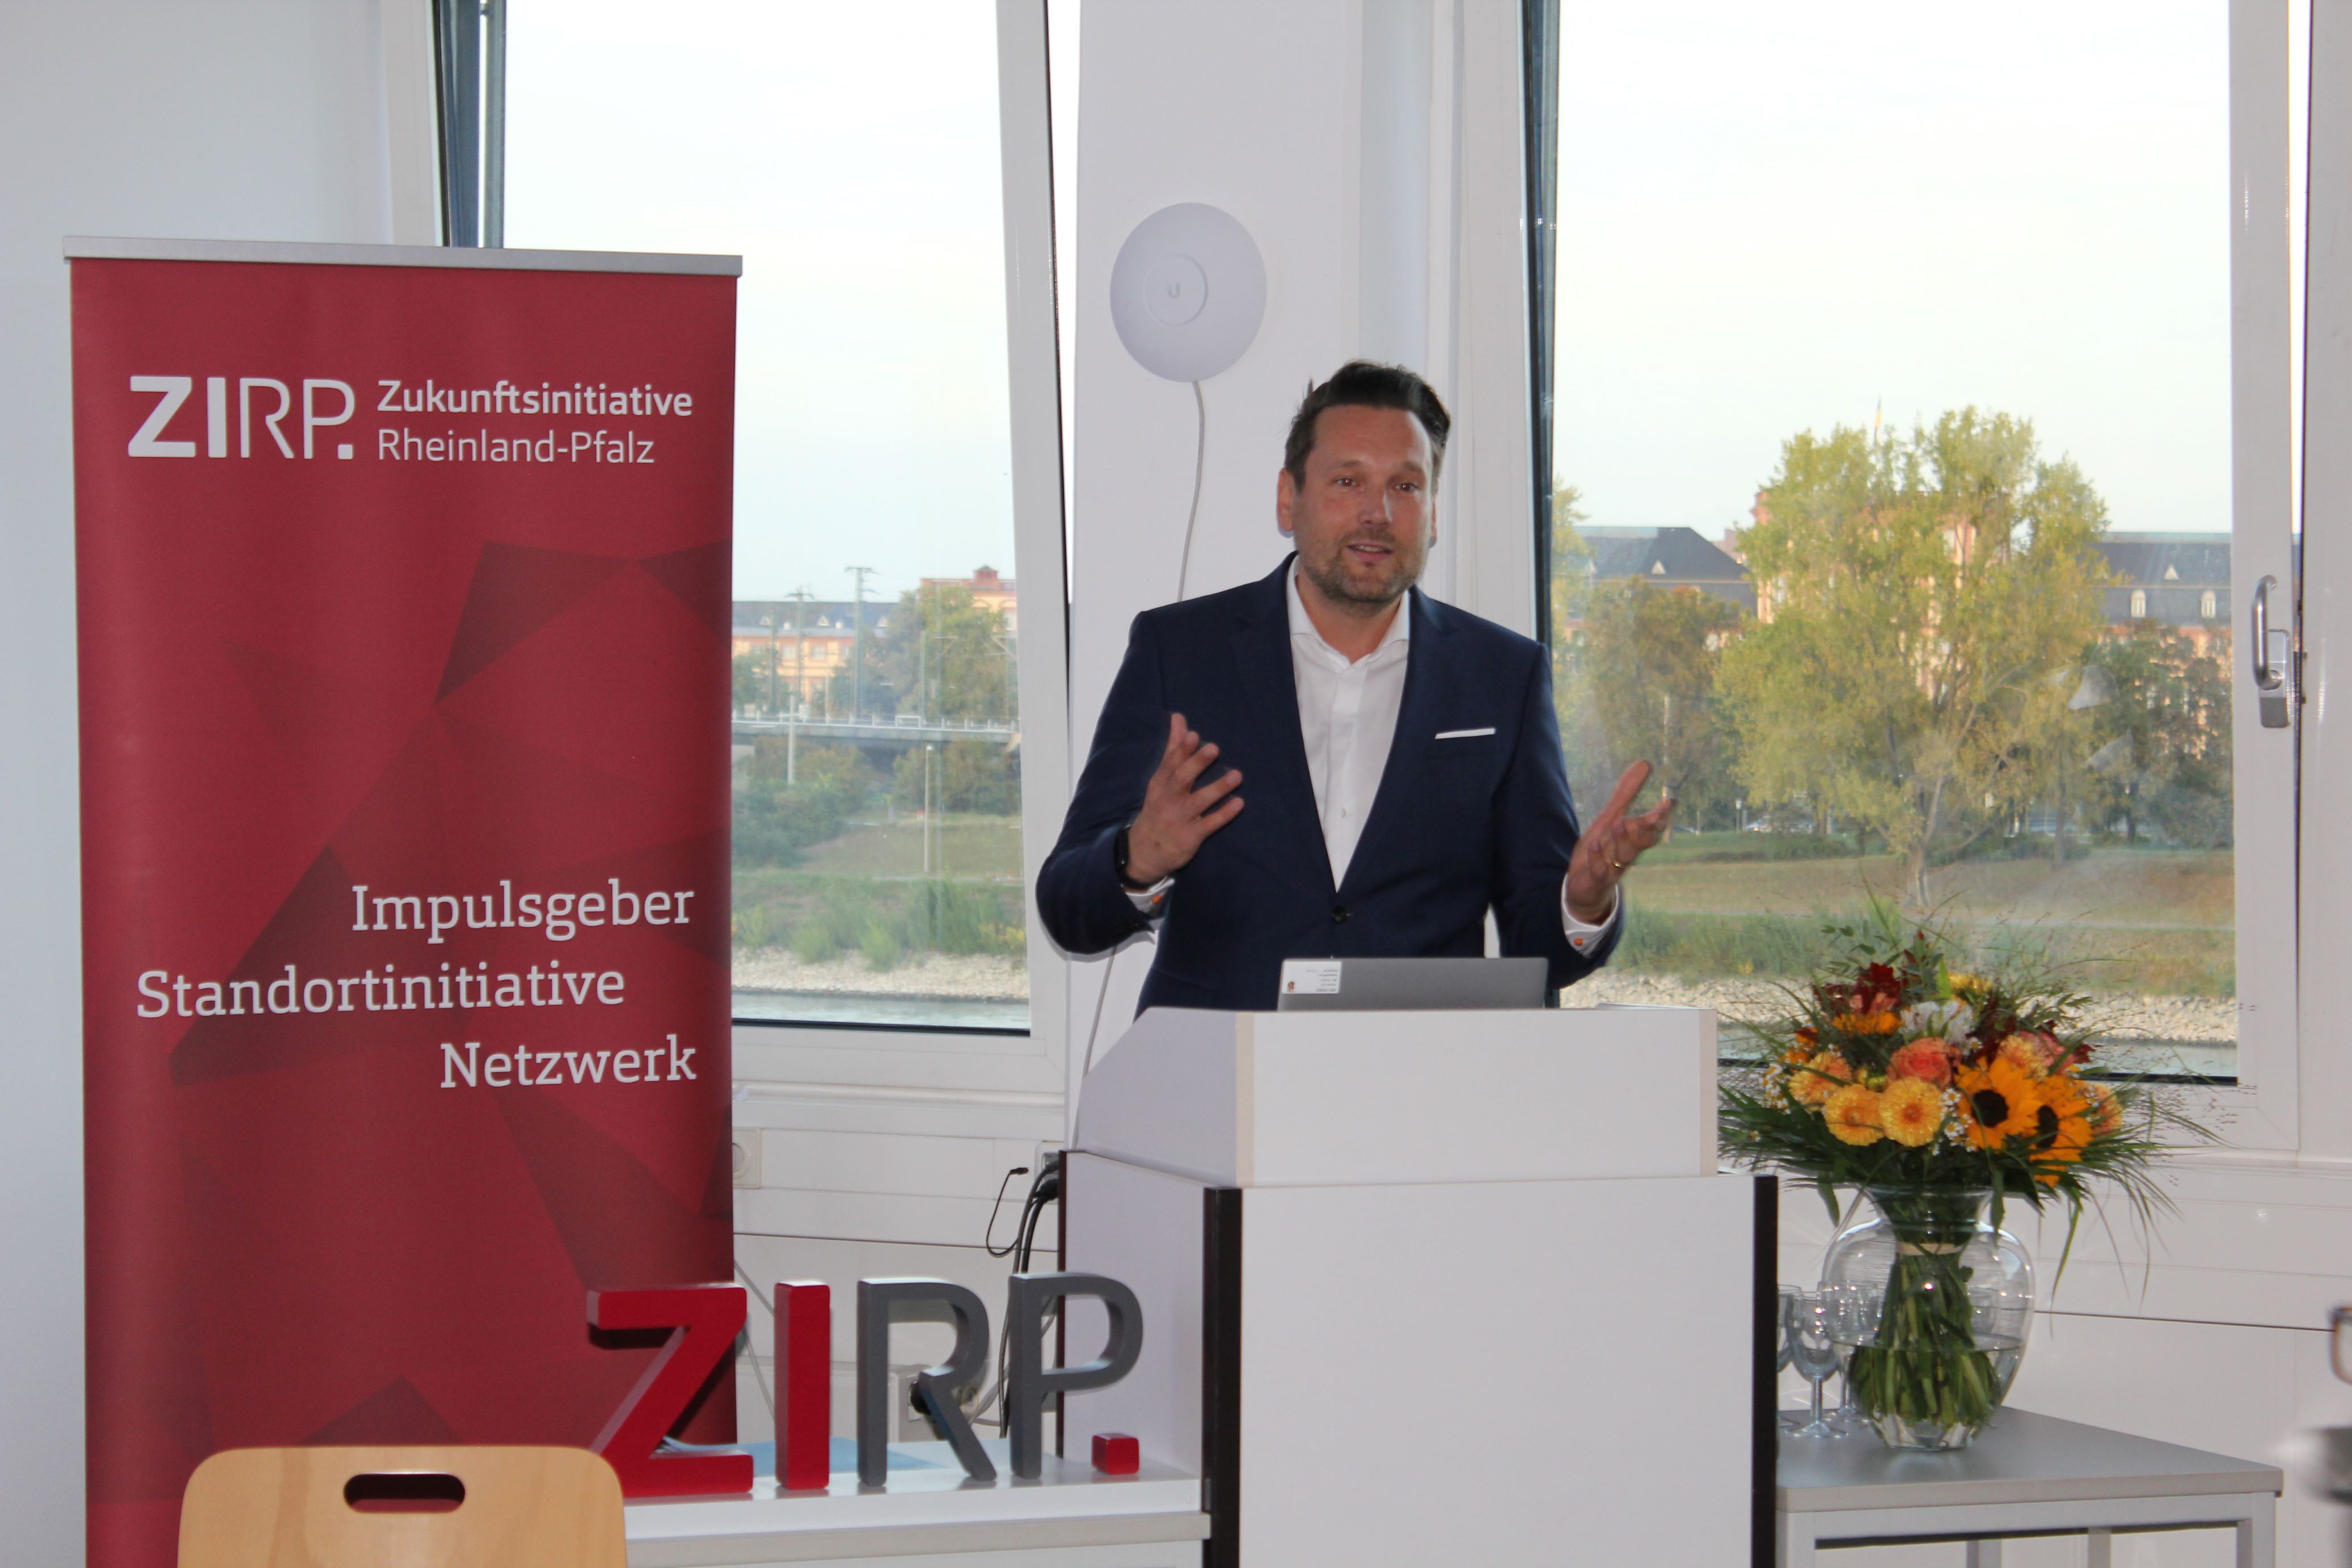 「世界中からの優秀な頭脳 – 国際研究ネットワーク」をテーマにした ZIRP がルートヴィッヒスハーフェン経済社会大学 OAI を訪問、プレスリリース